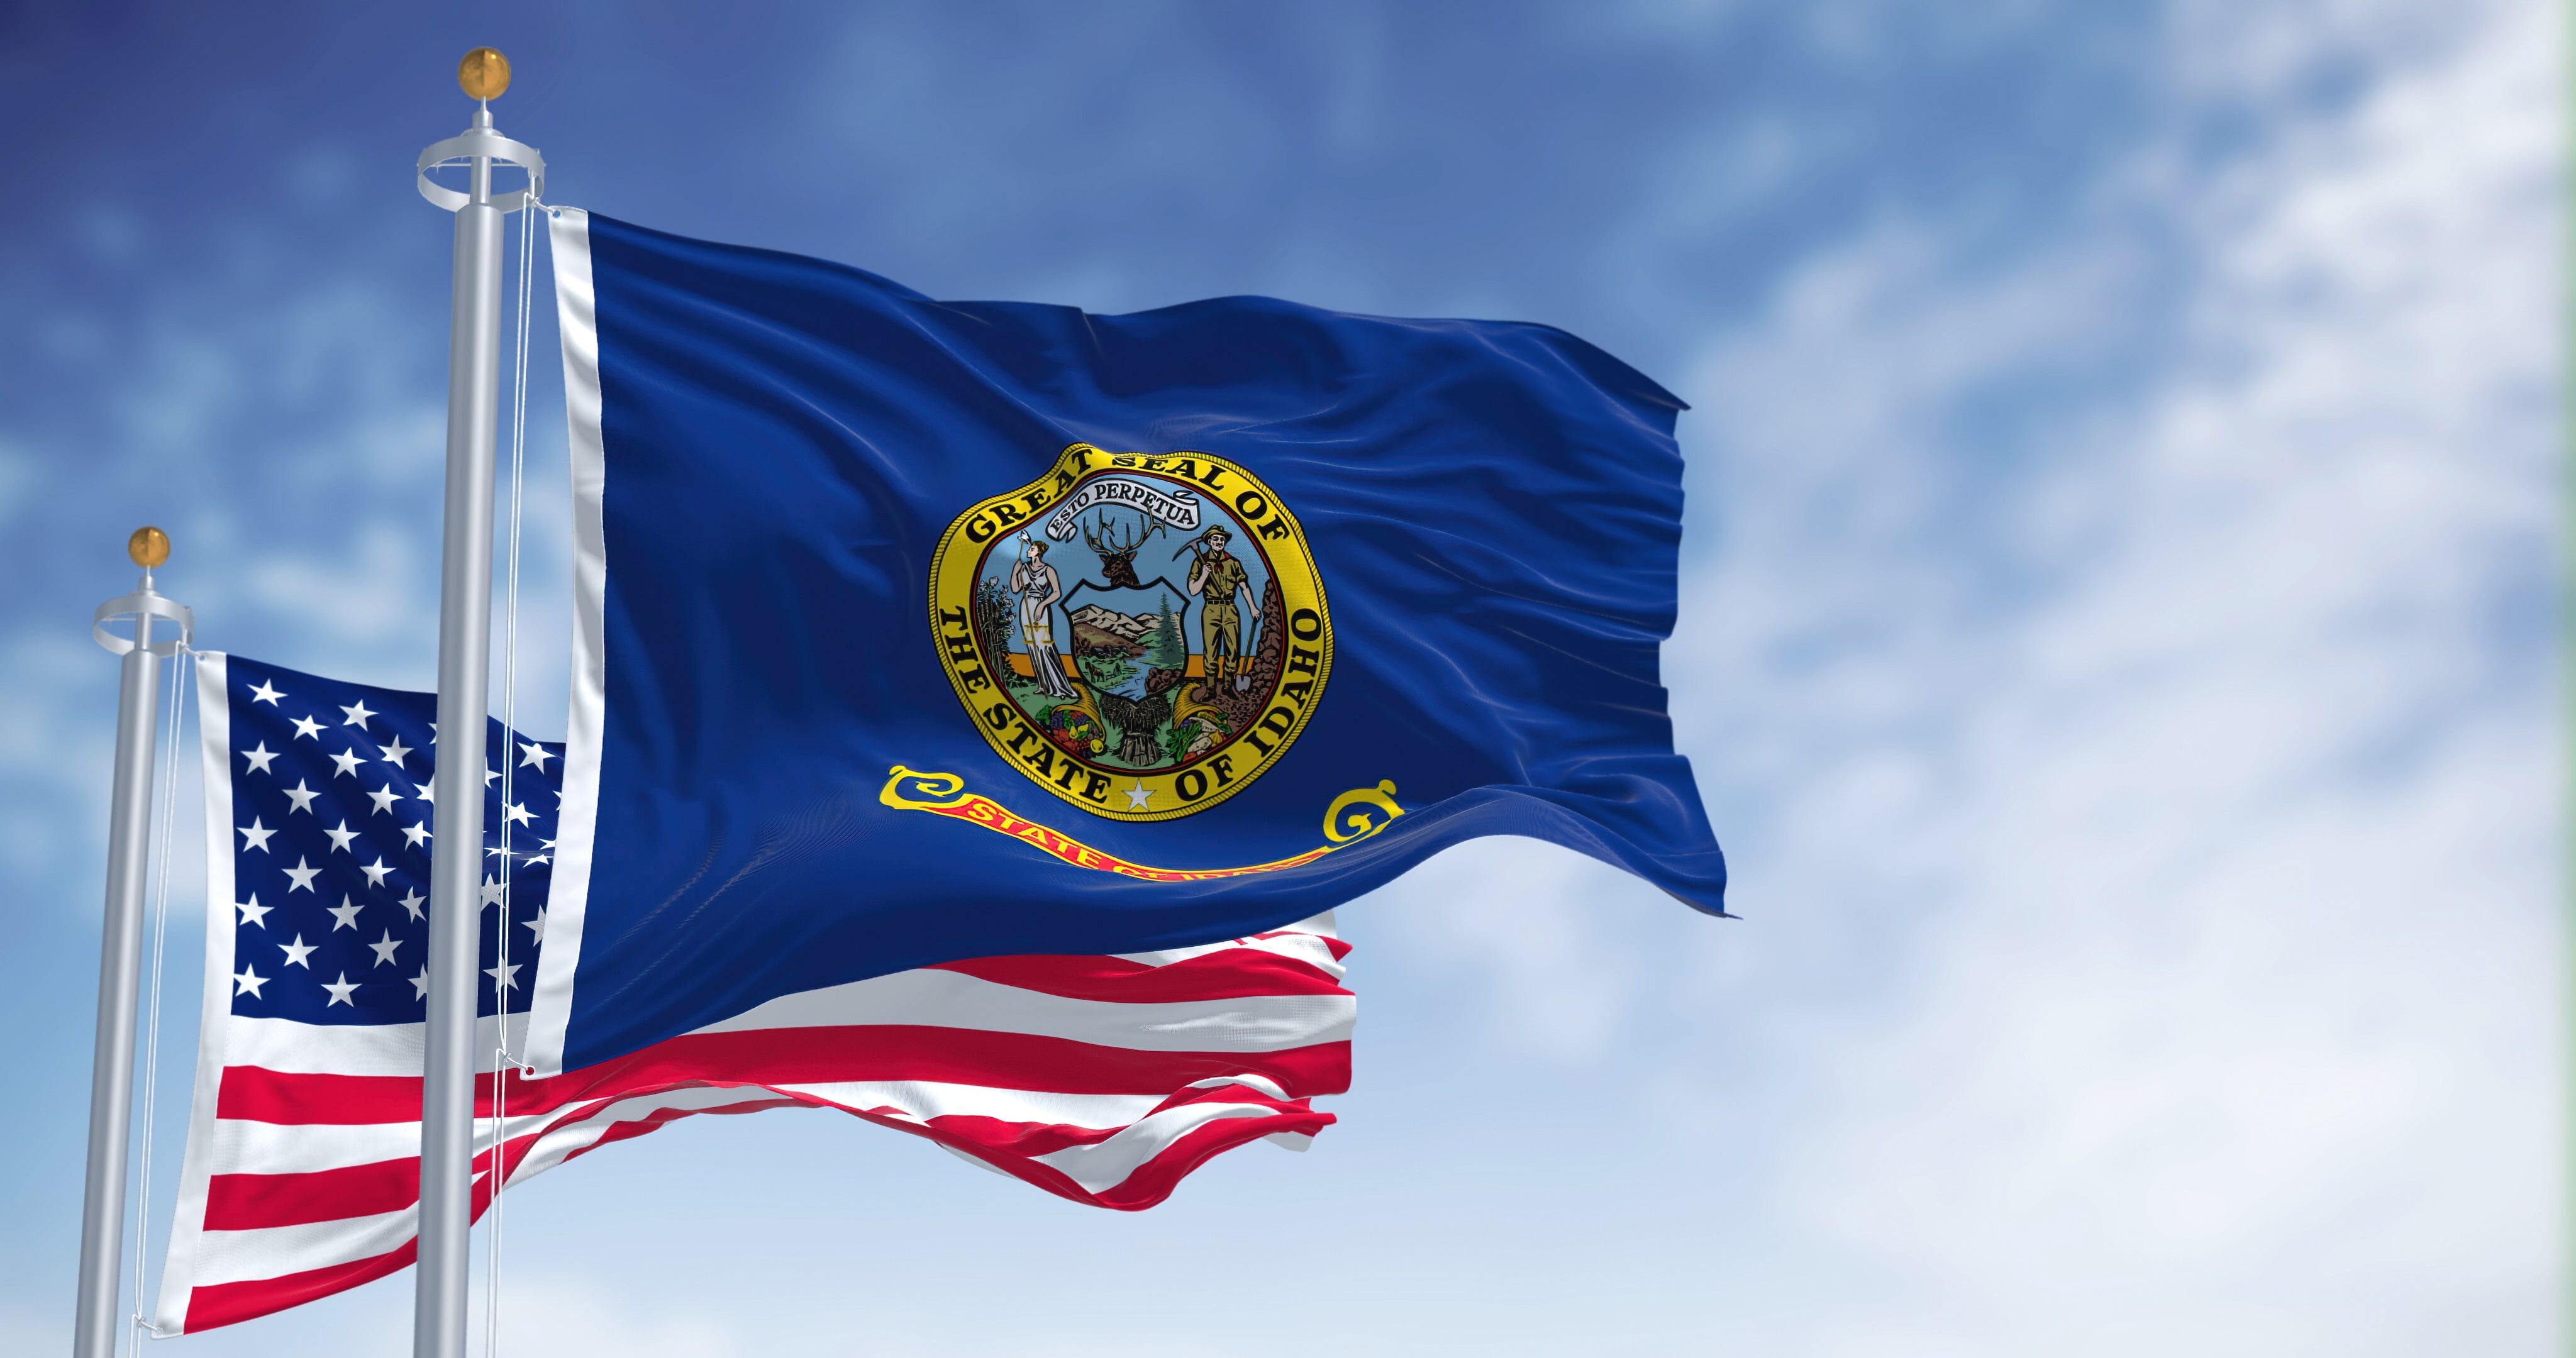 Idaho State Flag | Nylon or Poly